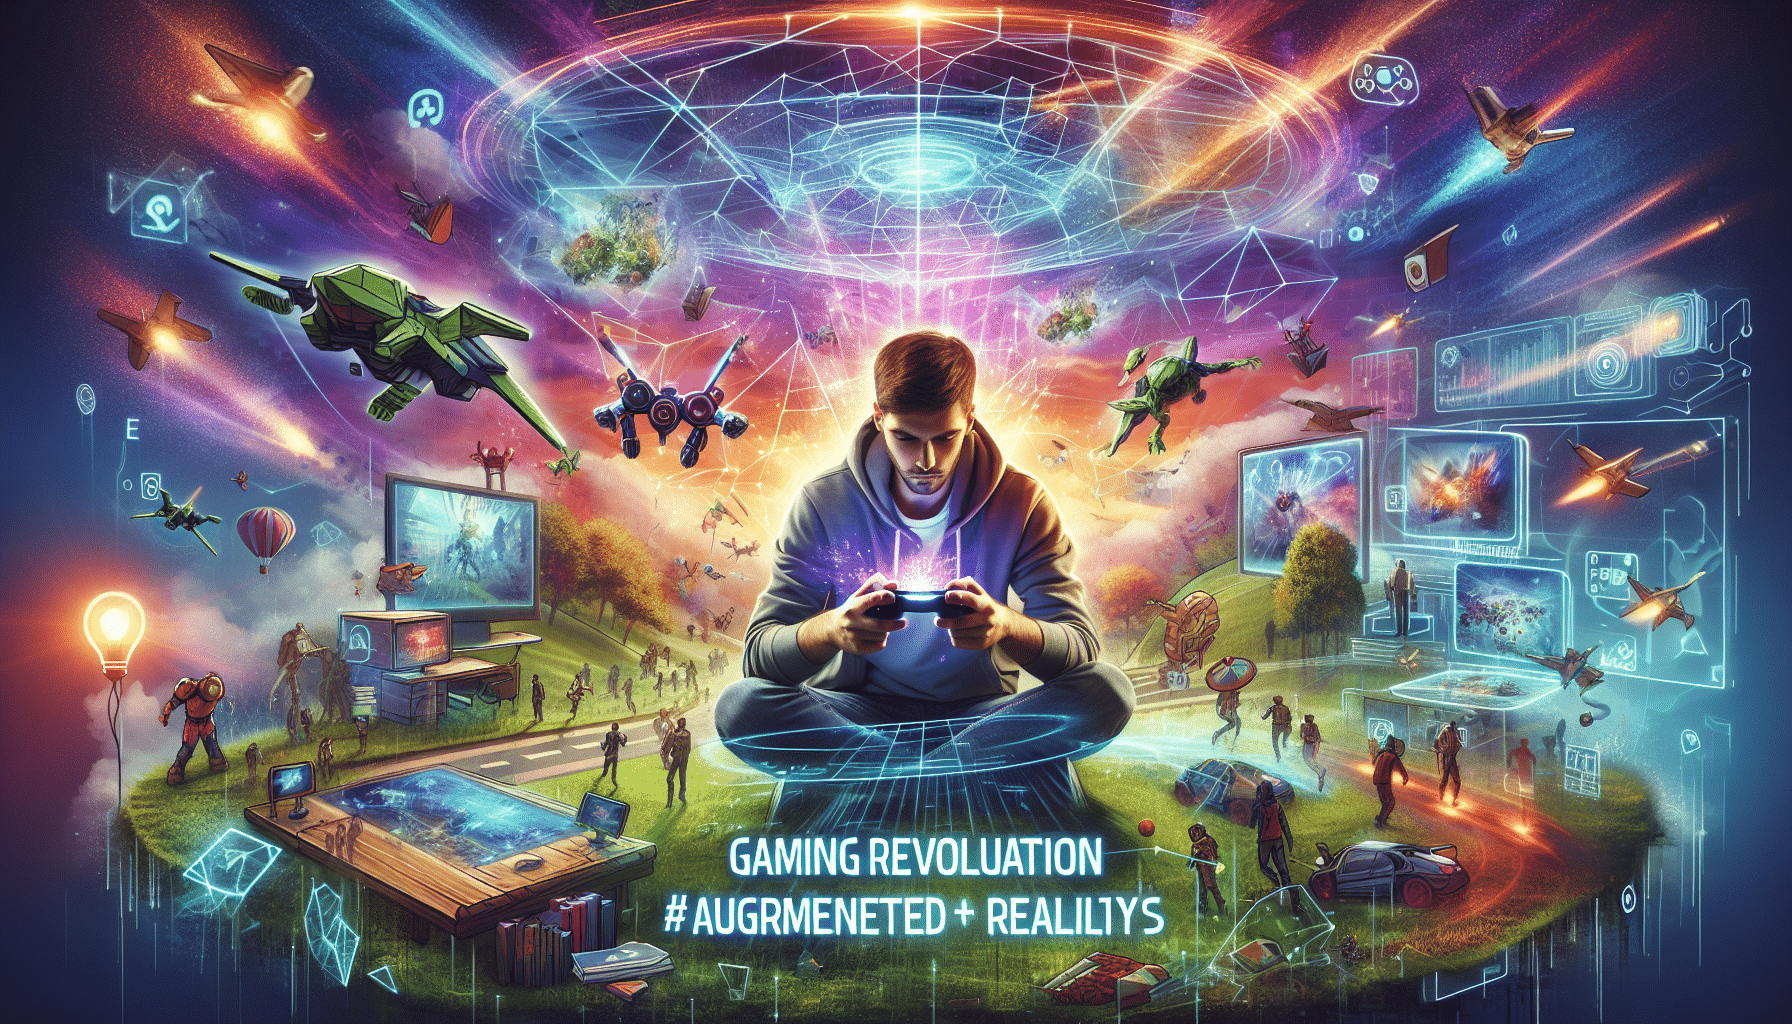 découvrez comment la réalité augmentée révolutionne l'expérience des jeux vidéo. explorez un monde virtuel où la frontière entre réalité et imaginaire s'estompe. plongez dans une expérience de jeu inédite et immersive grâce à la réalité augmentée !